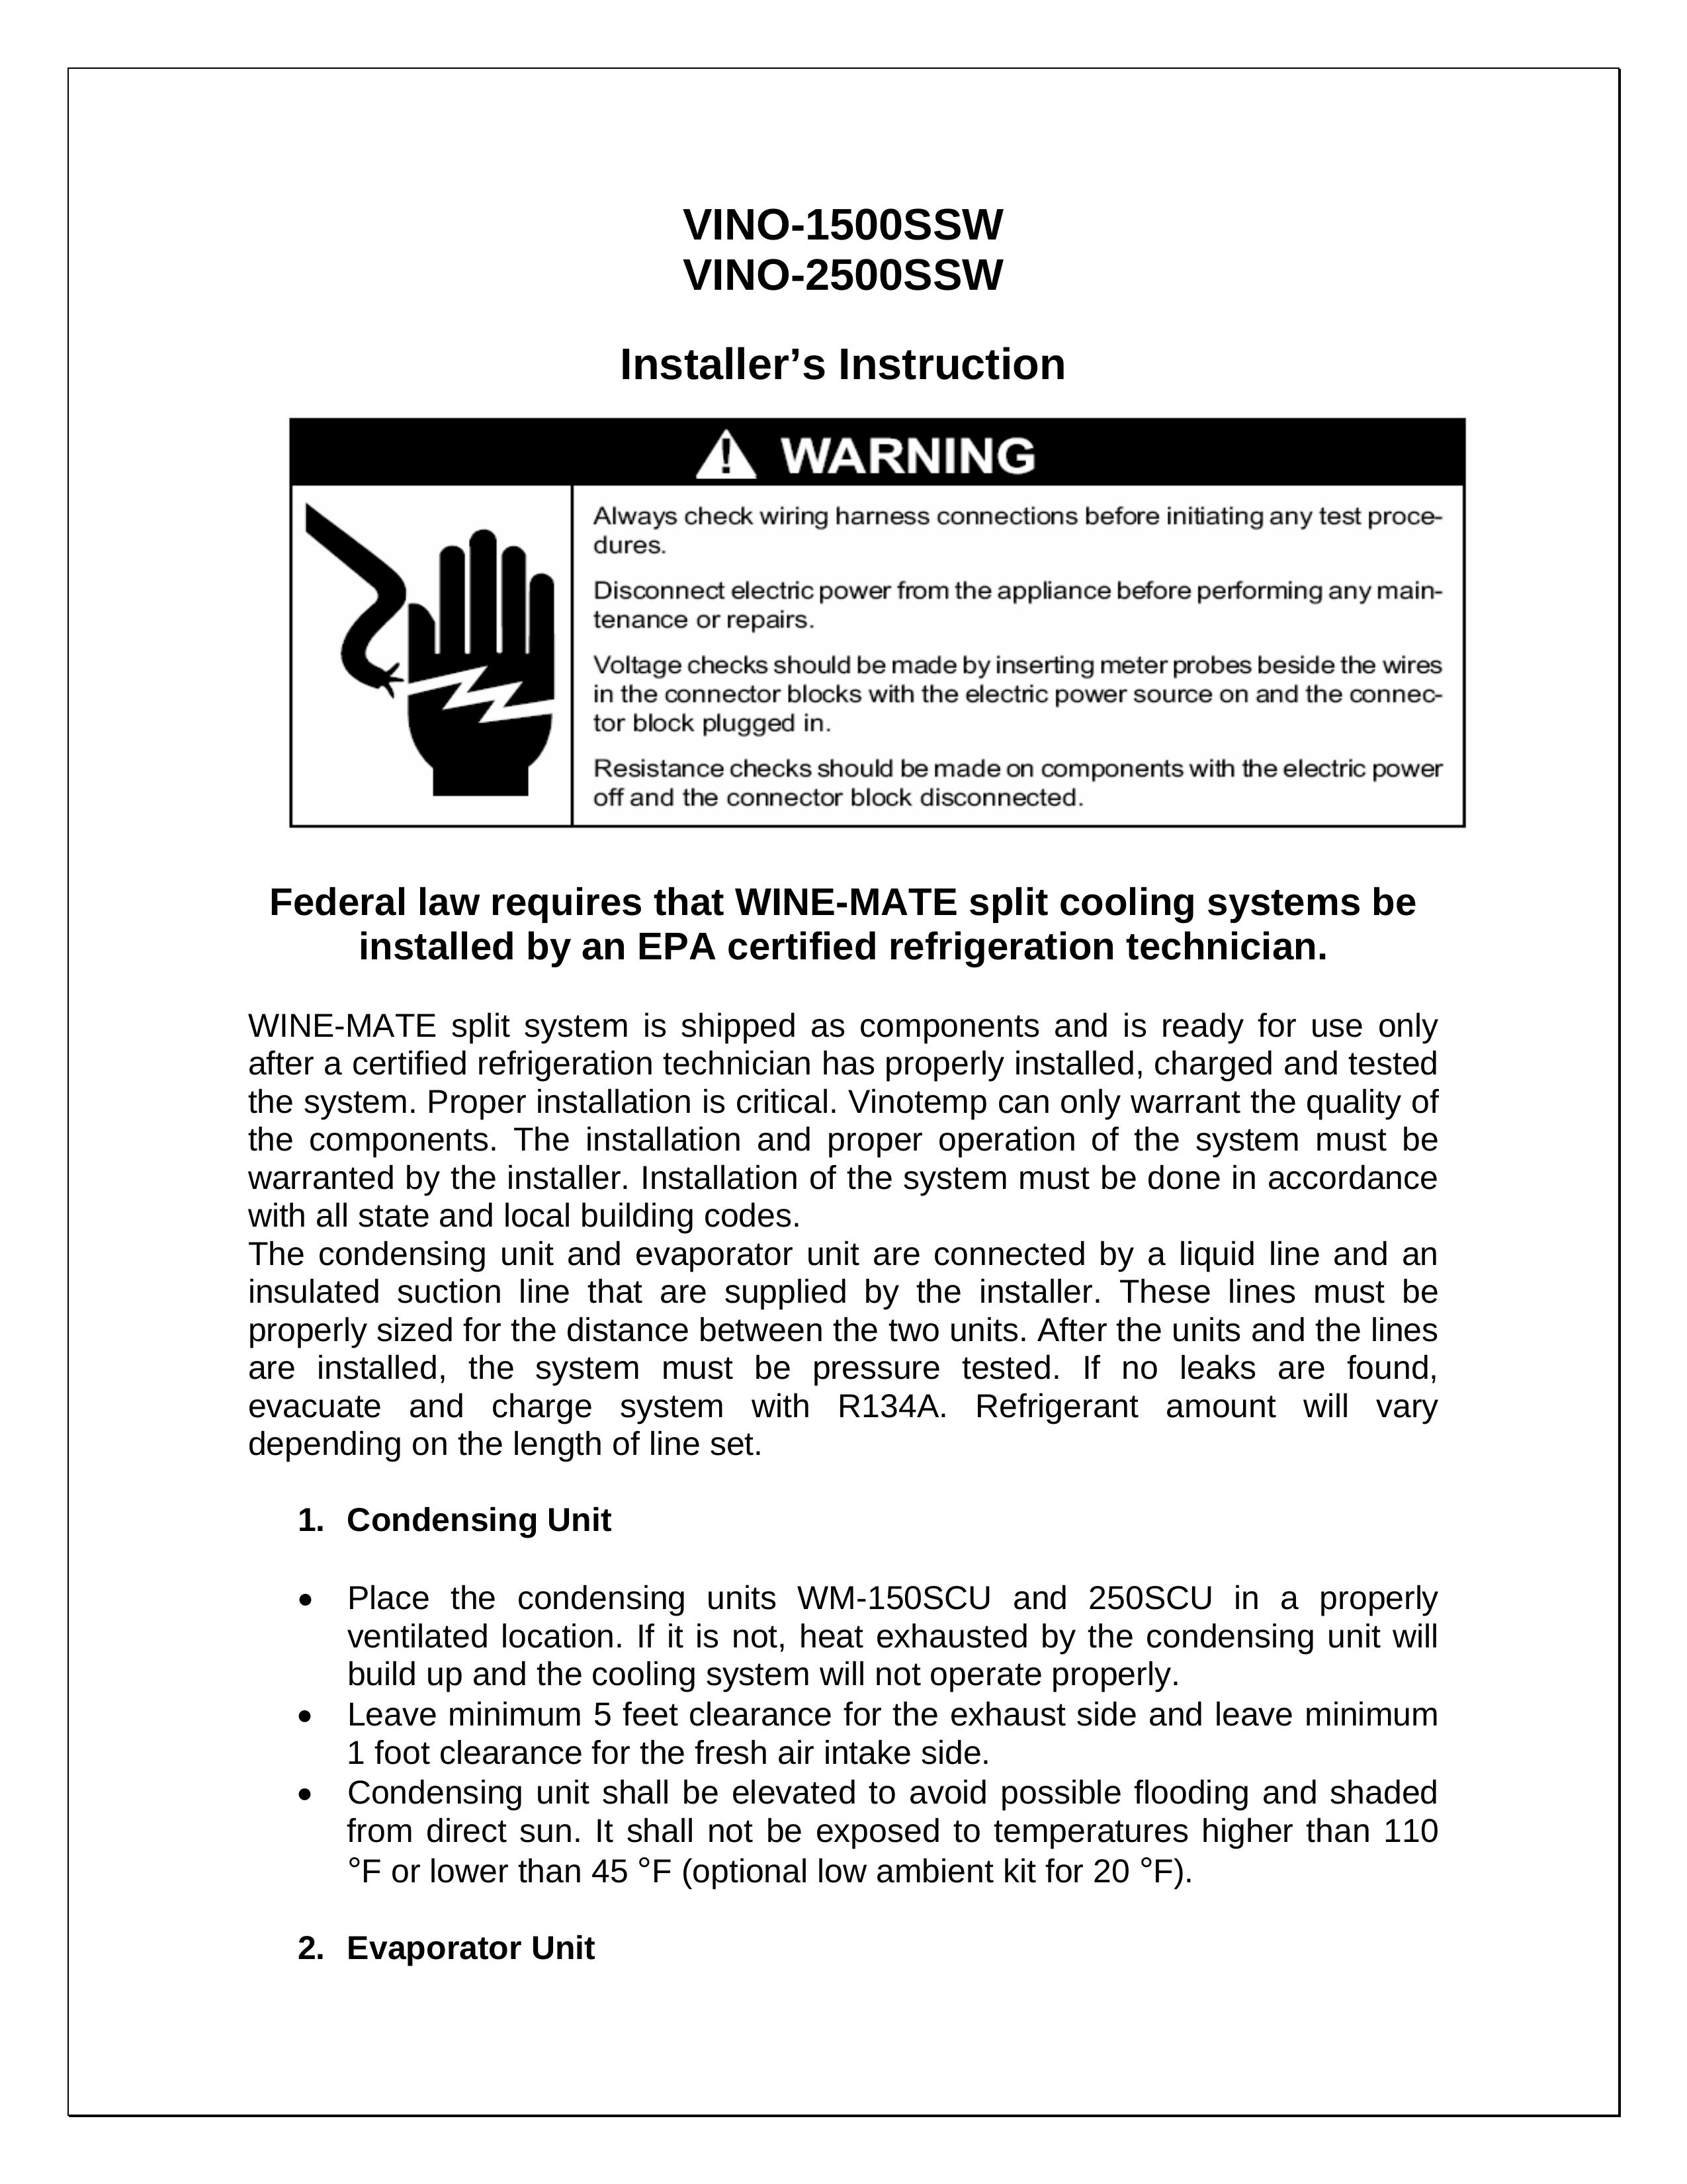 Vinotemp VINO-1500SSW Refrigerator User Manual